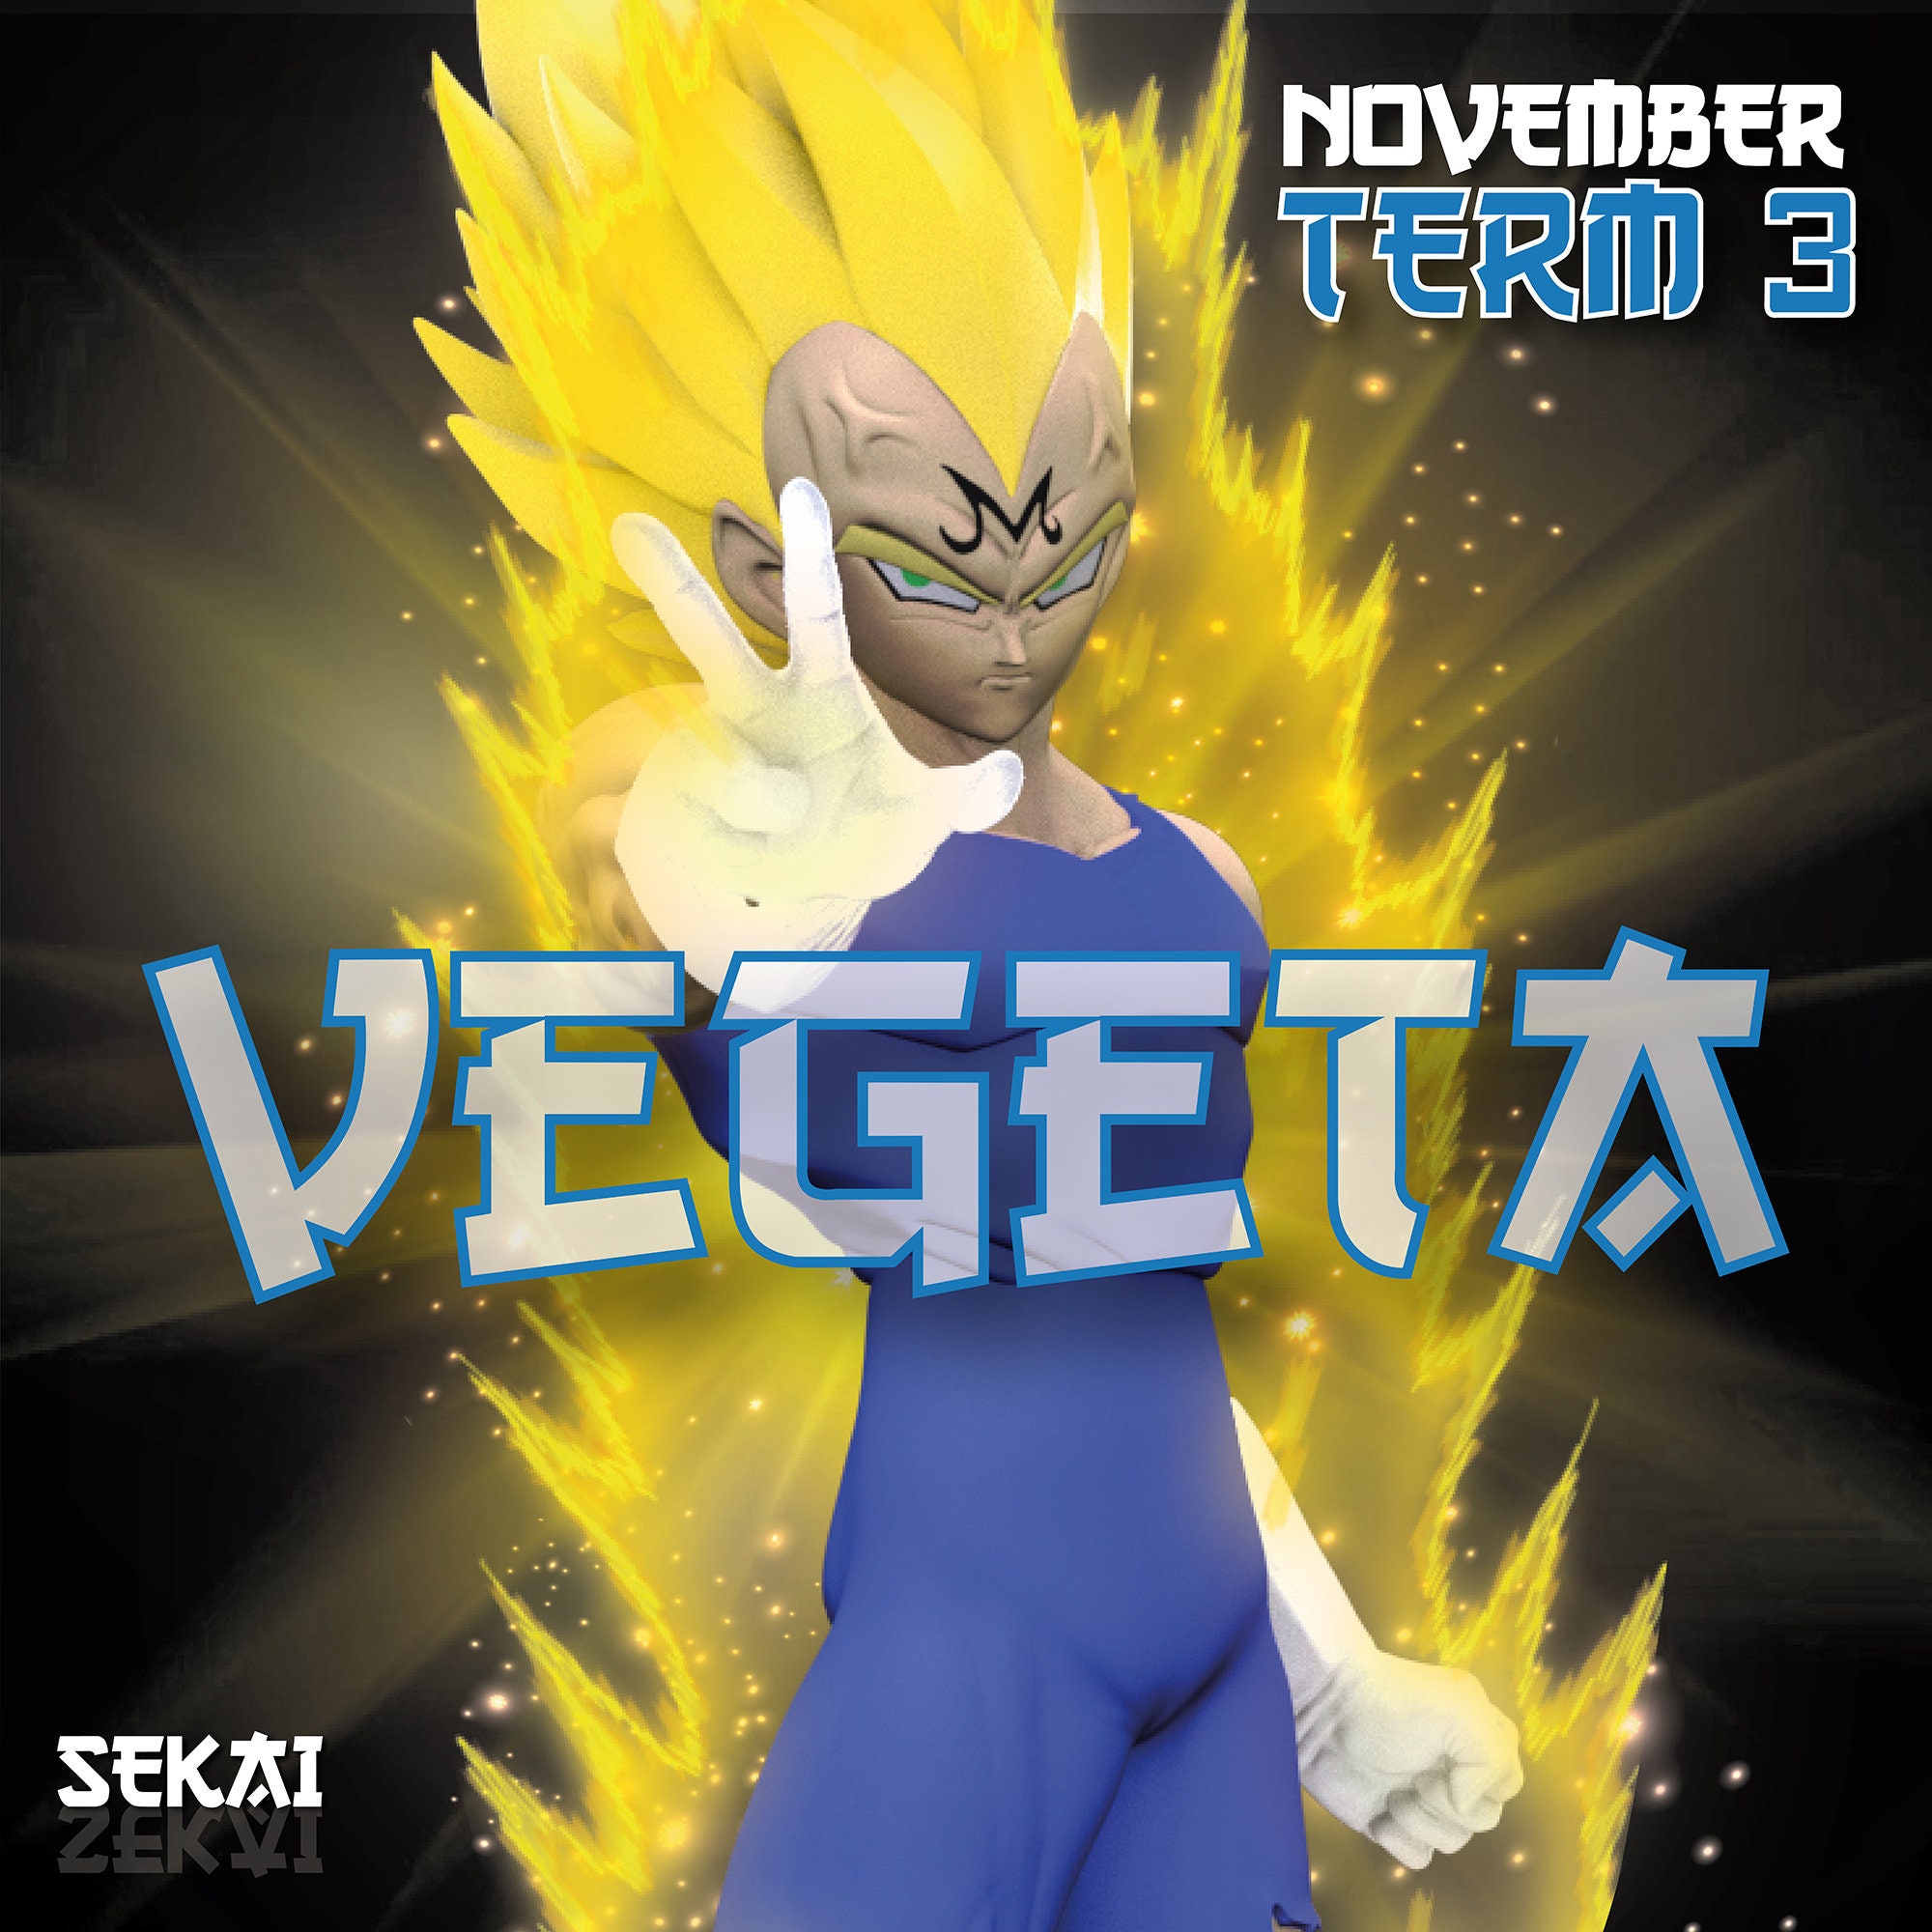 Majin Vegeta Super Saiyan 2 – Xenoverse Mods